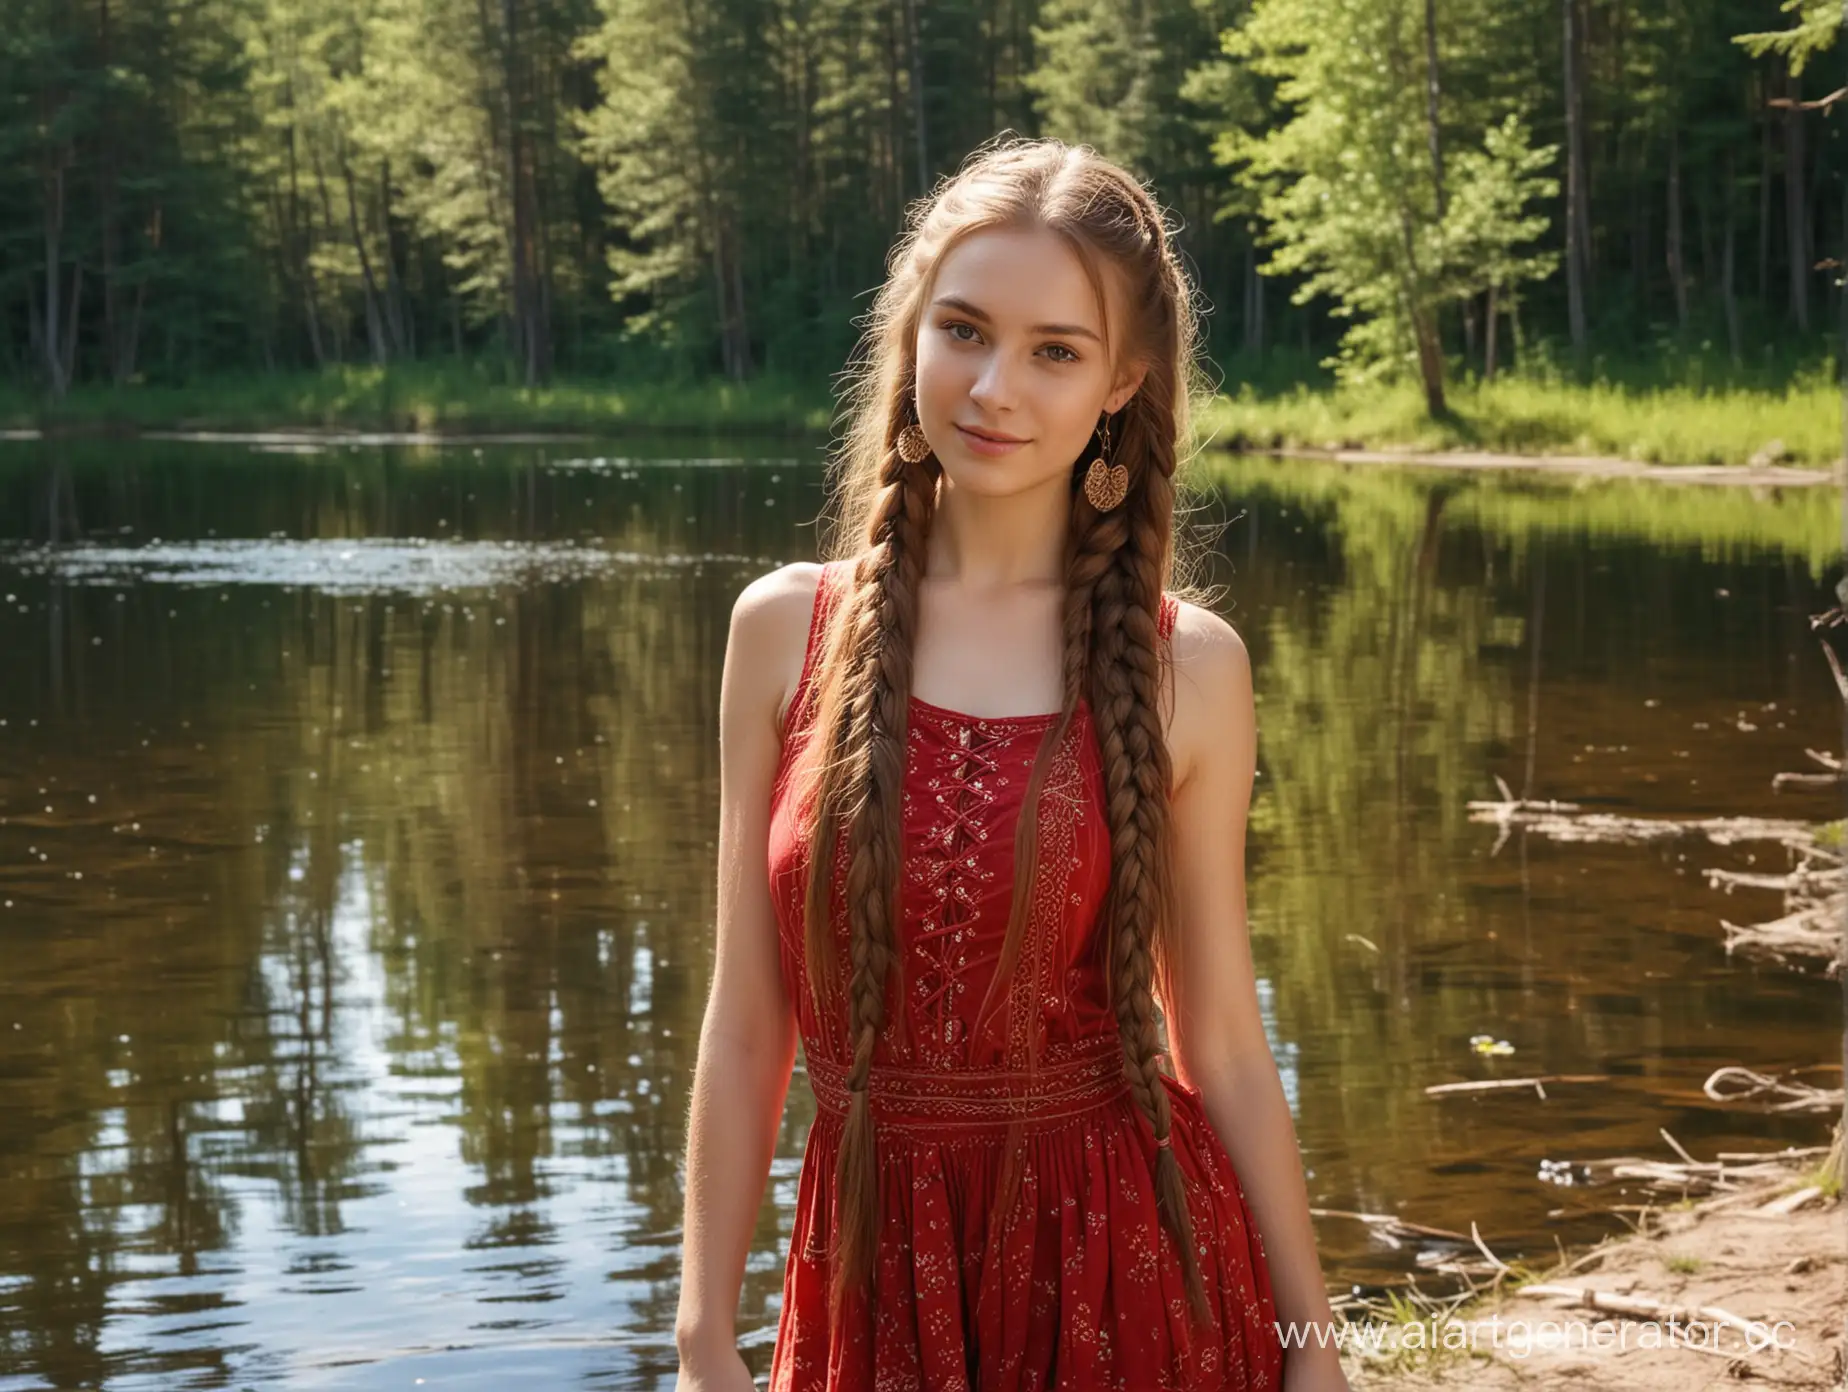 Молодая Русская красавица на берегу лесного озера, Красный сарафан, русые длинные косы, солнечный день